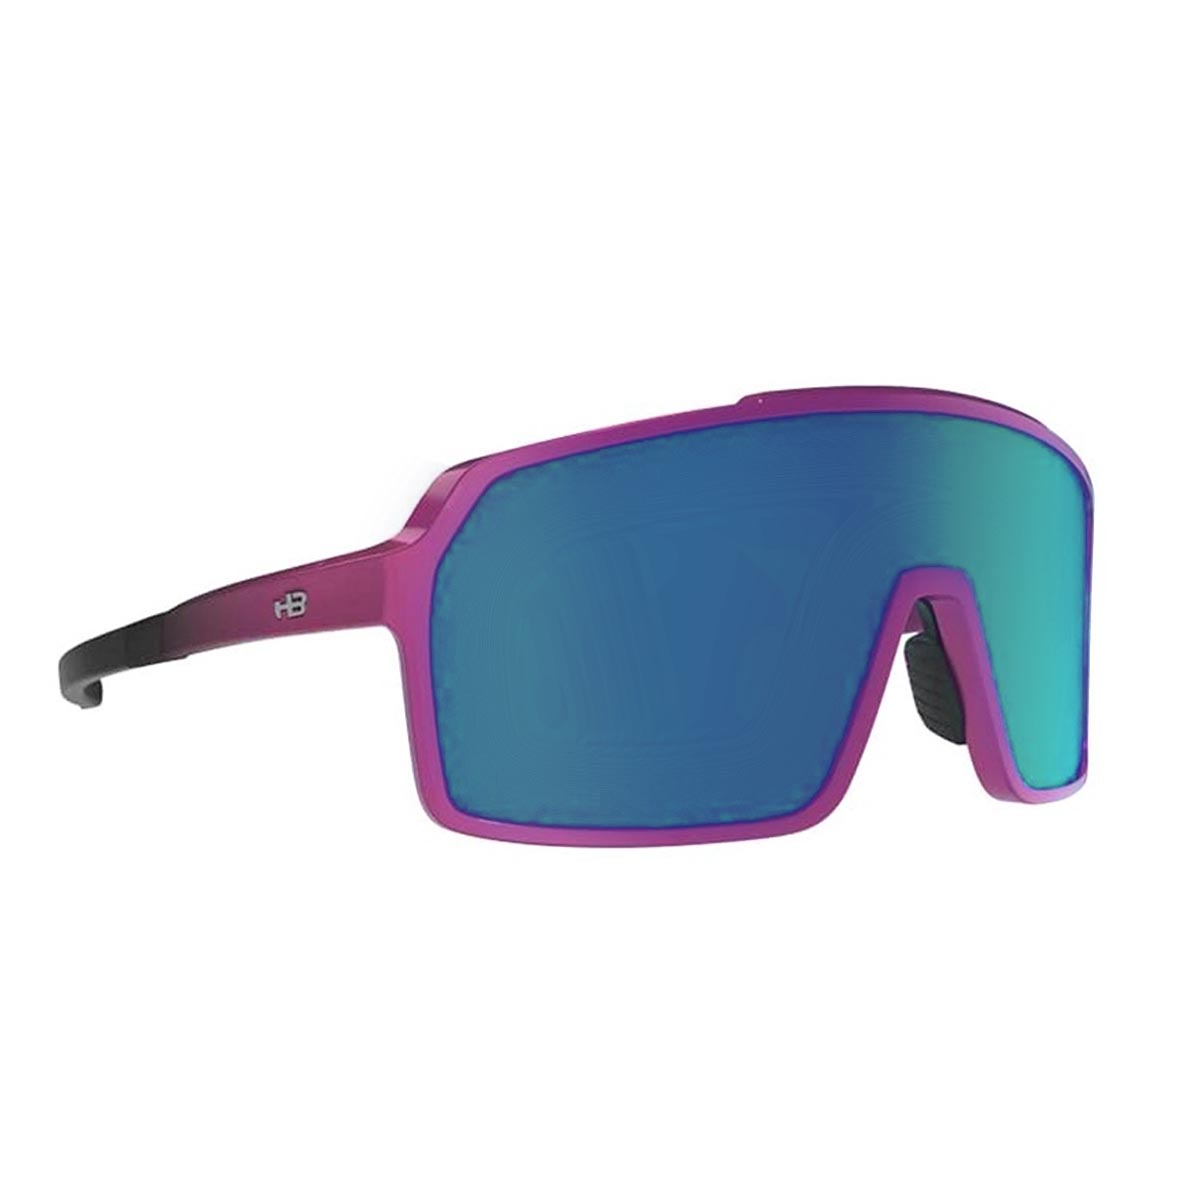 Oculos para Ciclismo HB Grinder Pink Gradiente Mirror Lente Azul Chrome Espelhada